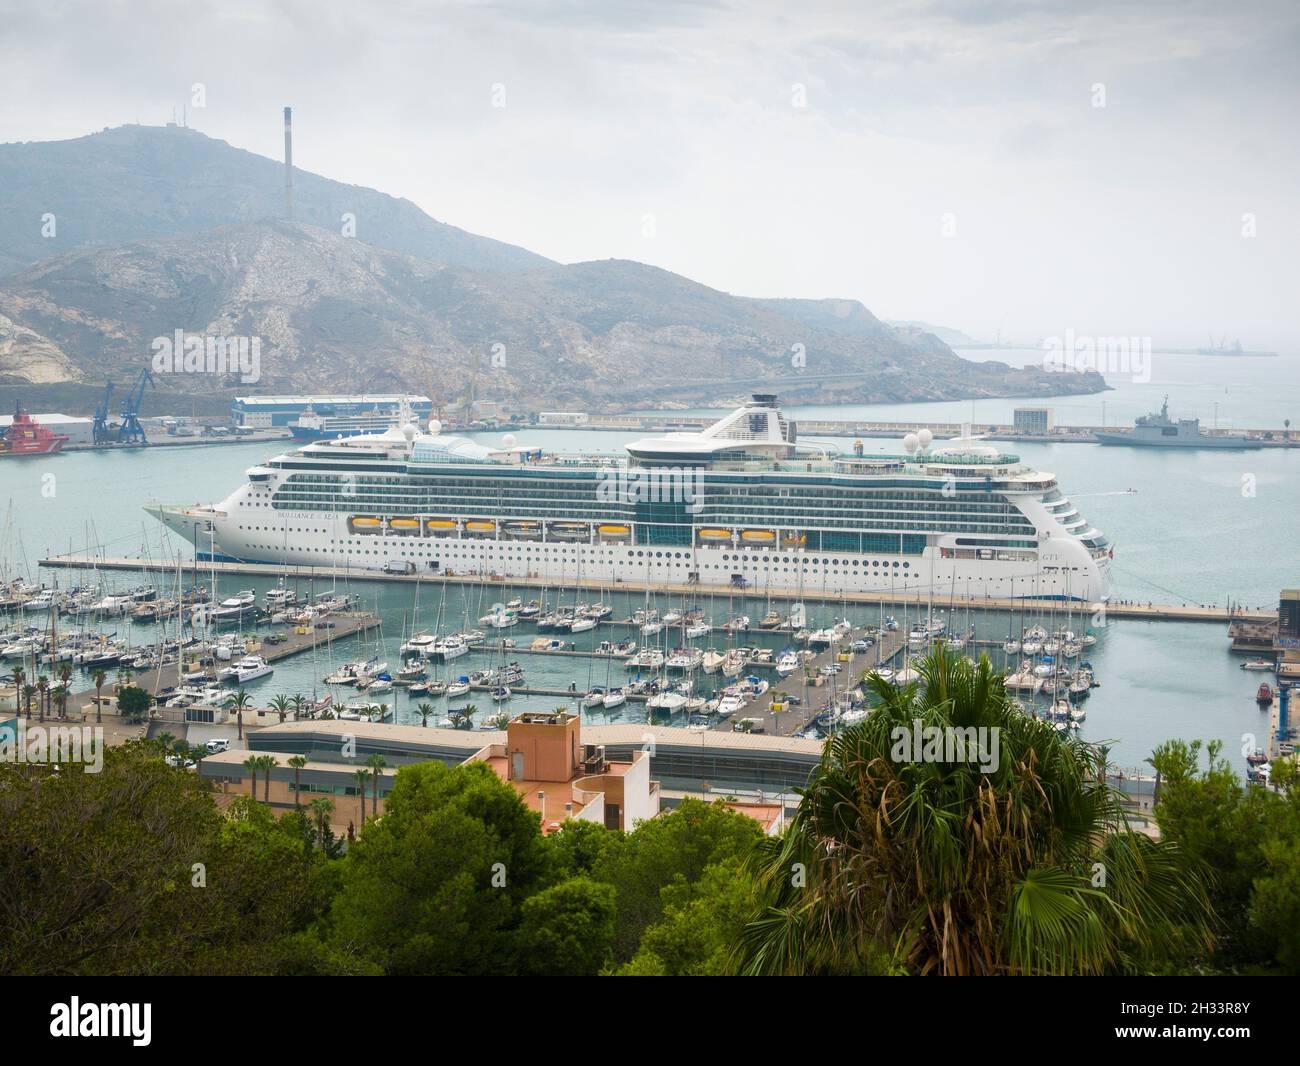 Das Royal Caribbean Cruise Ship Brilliance of the Seas dockte im Hafen der Stadt Cartagena an der Costa Blanca in Spanien an. Stockfoto